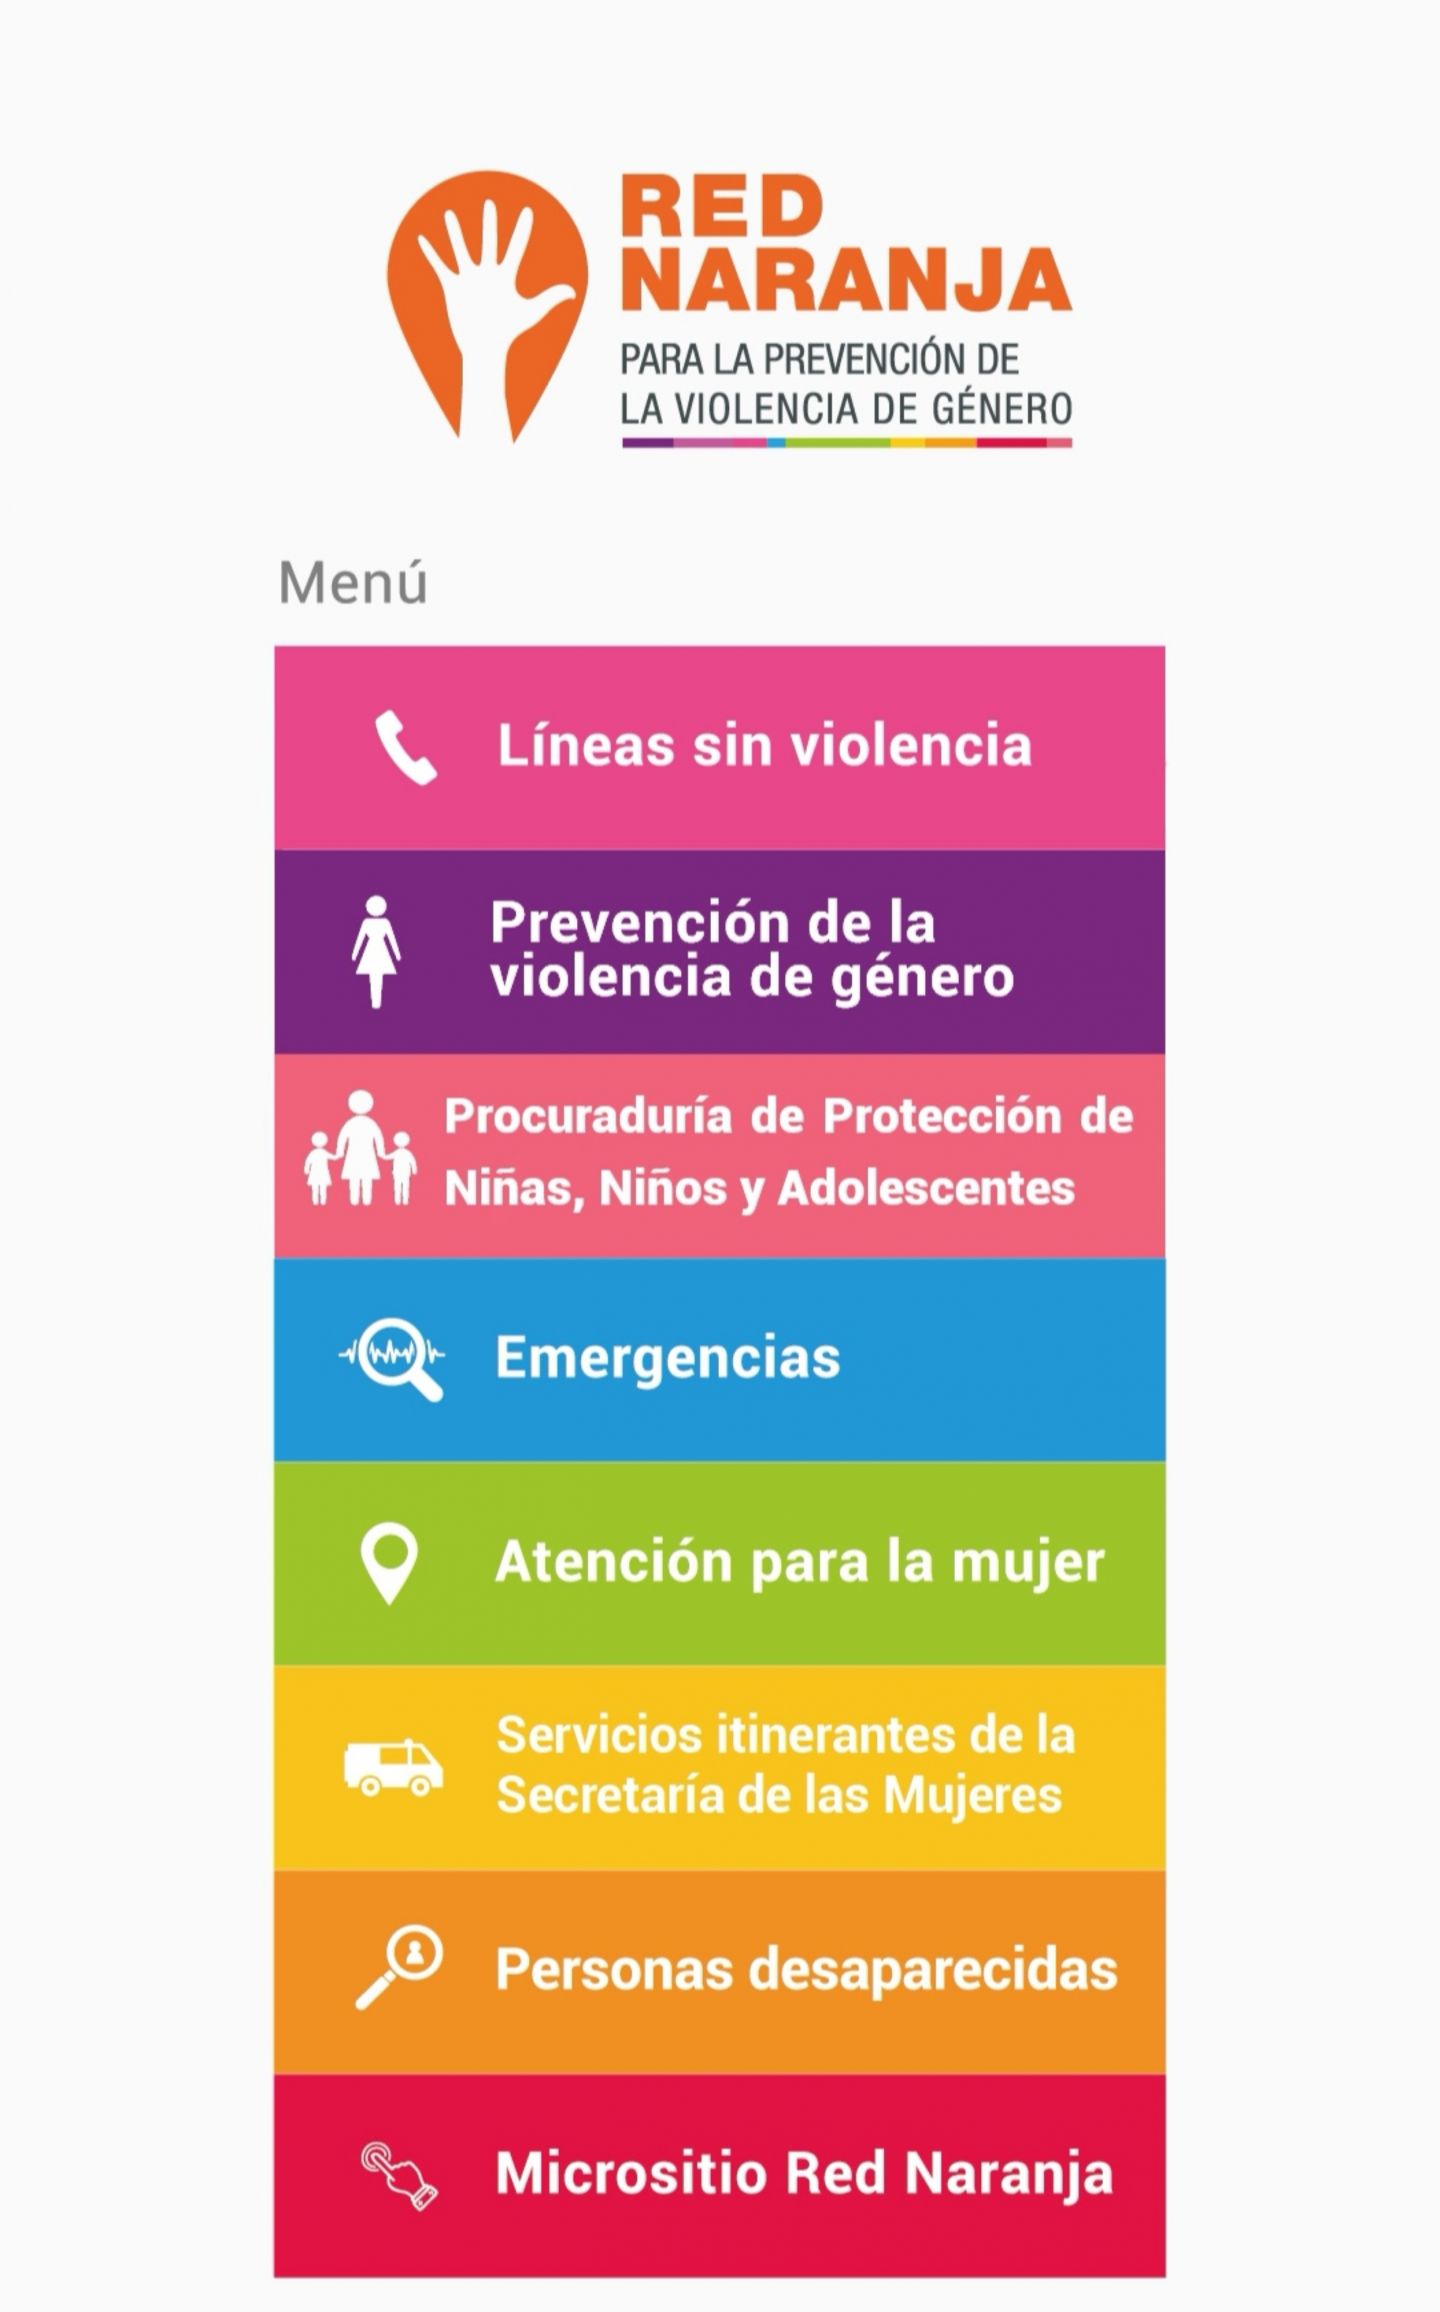 Fomenta la Red naranja protección para las mujeres Mexiquenses 
 